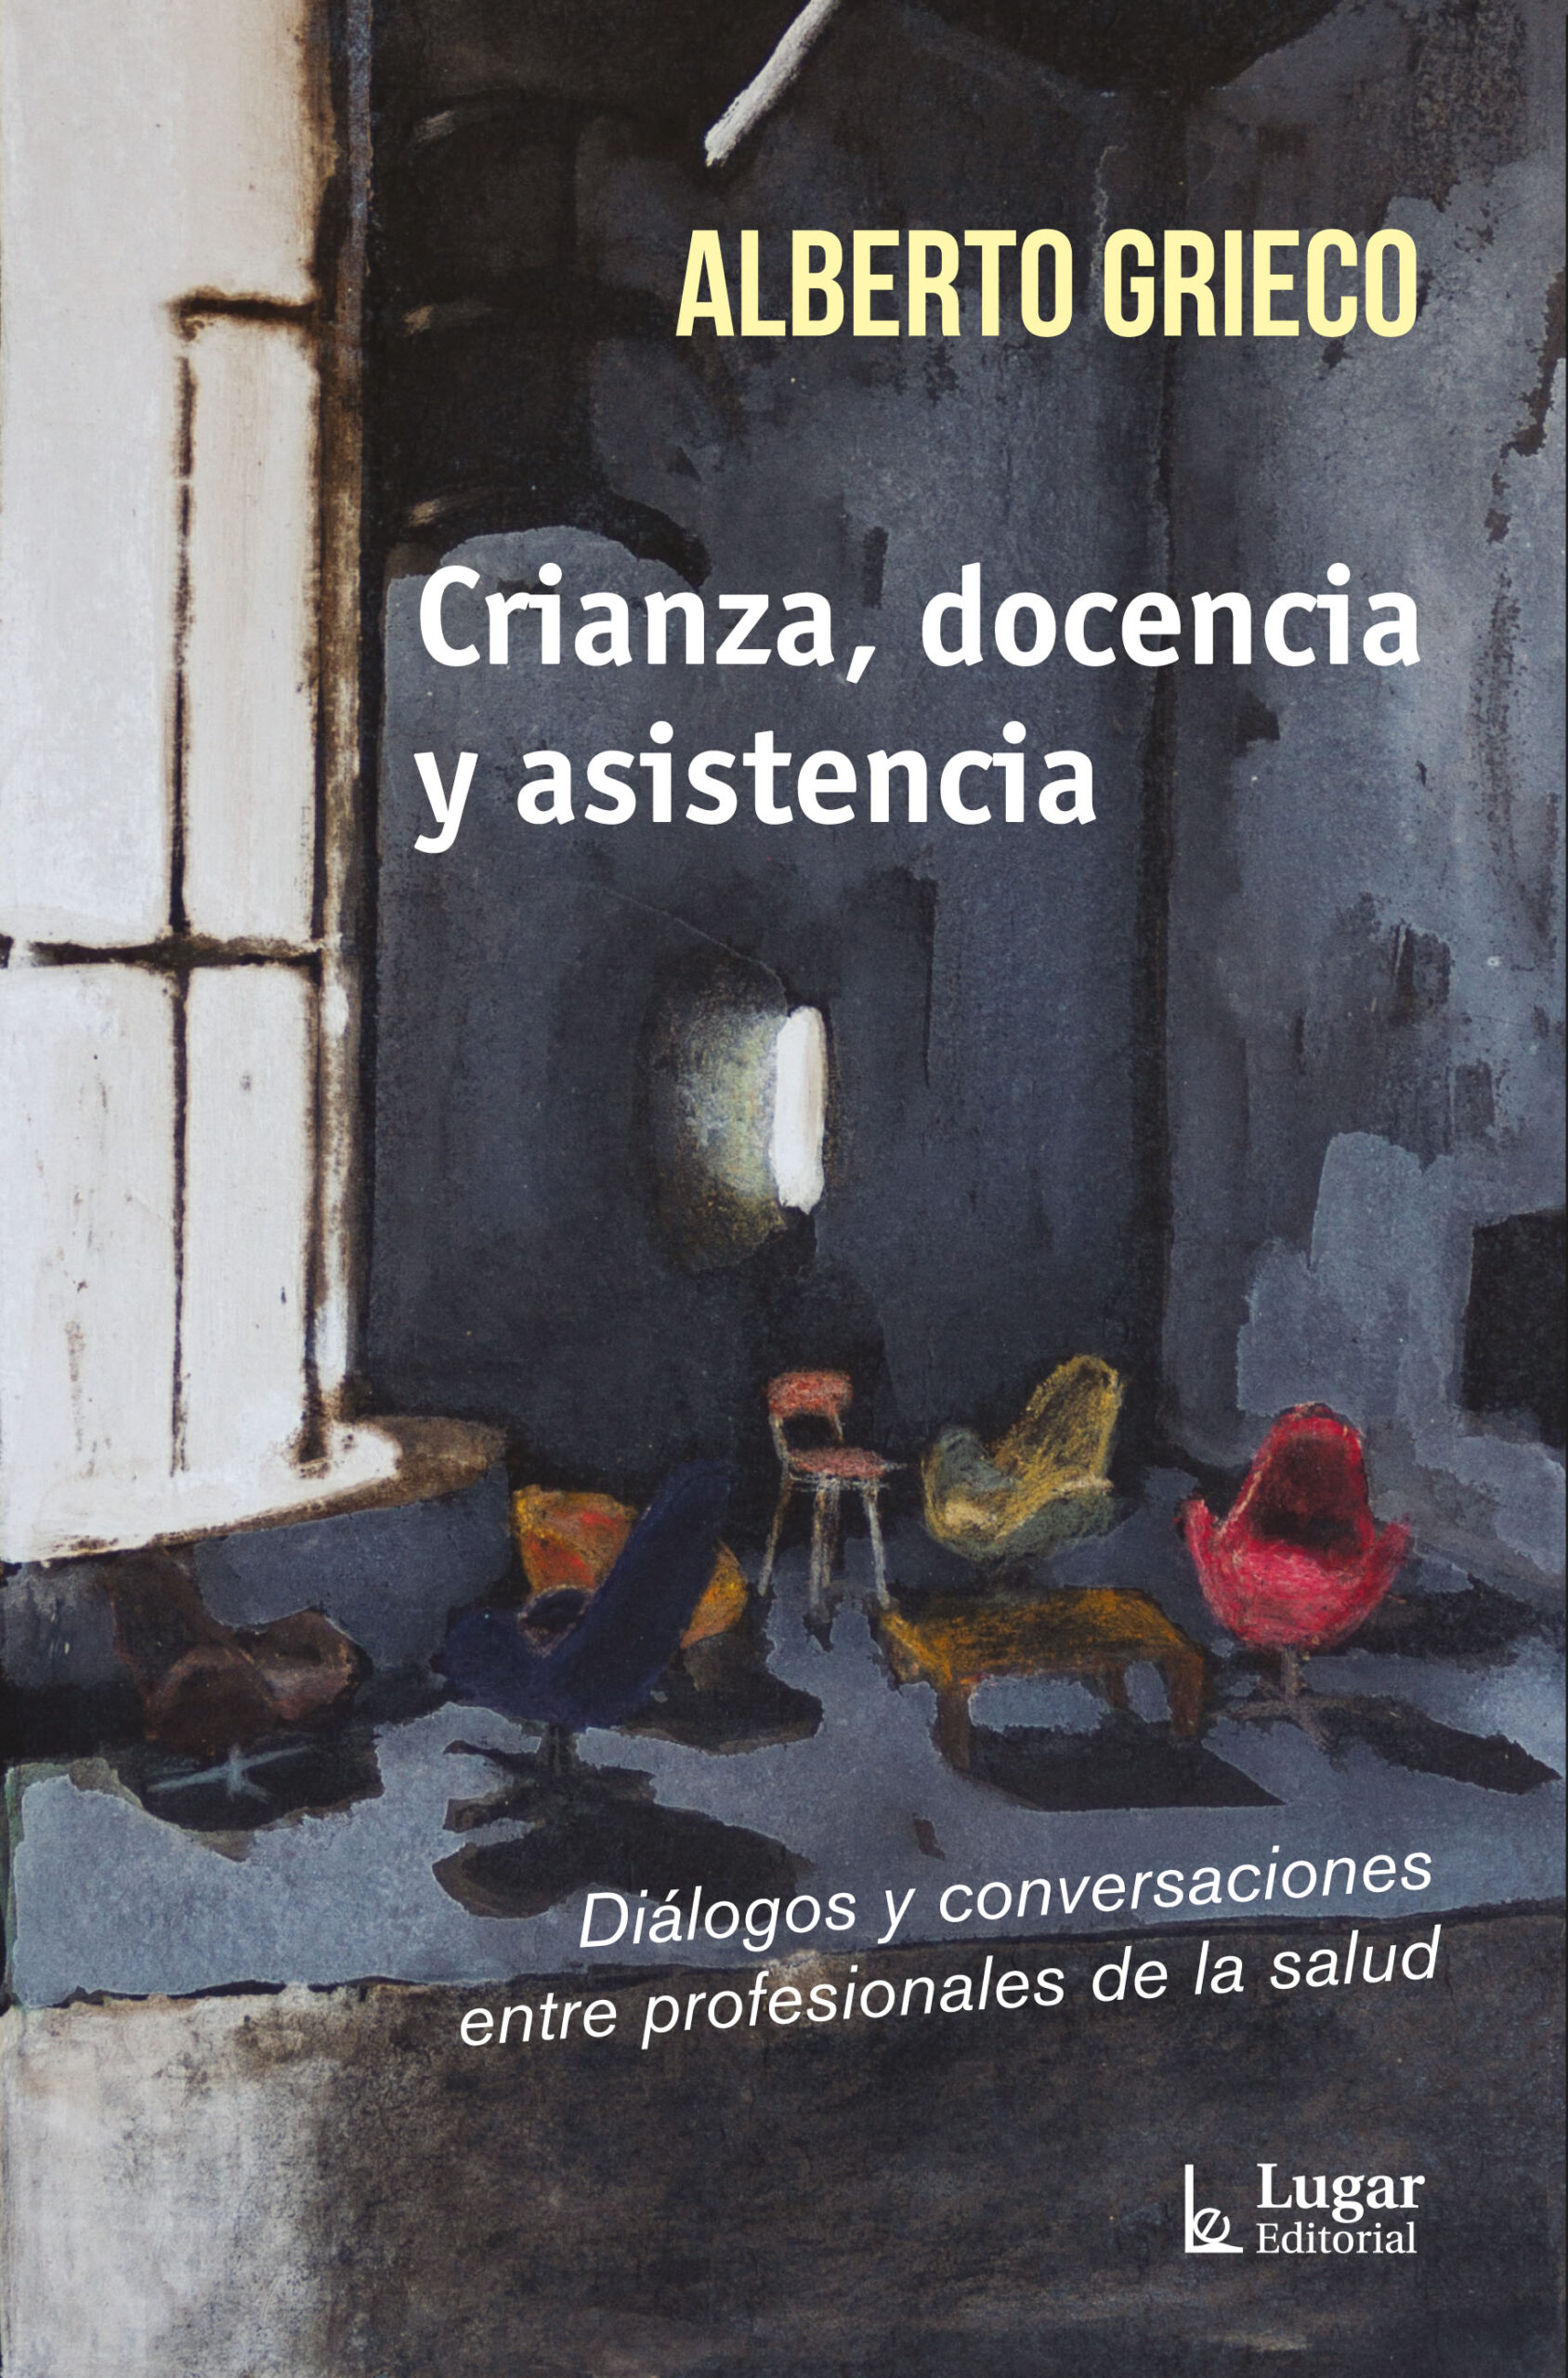 presentación del libro «Crianza, docencia y asistencia» del Dr. Alberto Grieco